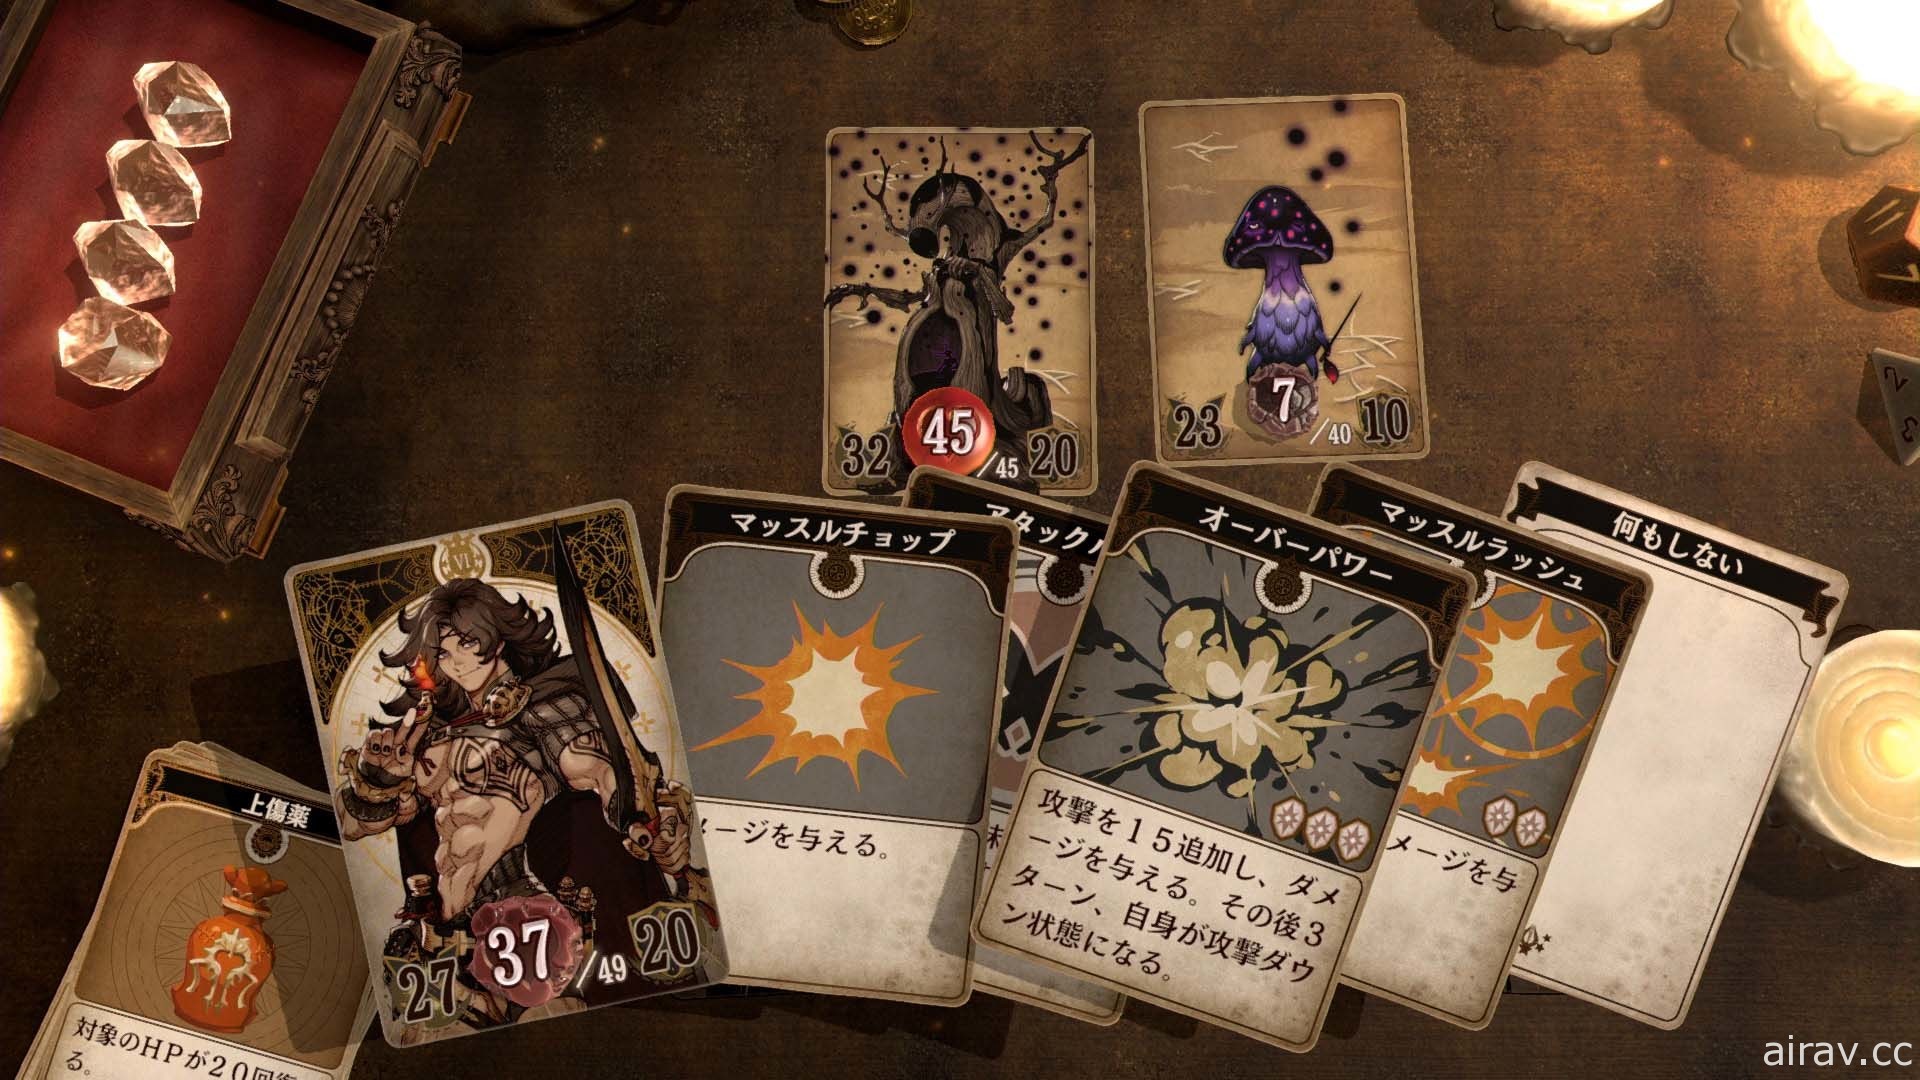 腦內演出 RPG《Voice of Cards 龍之島》公布主視覺圖及遊戲場規則等情報